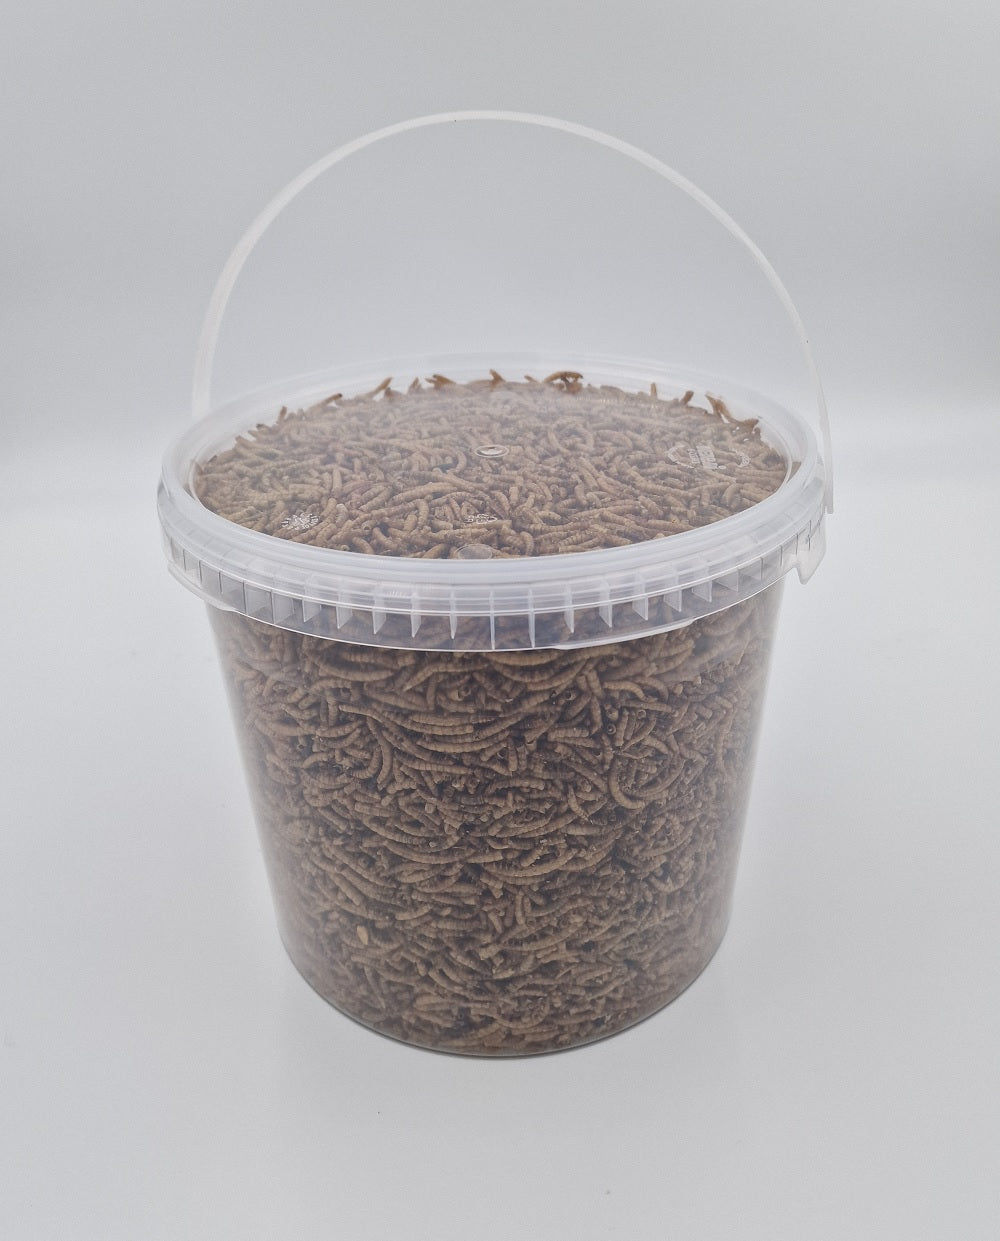 Mehlwürmer getrocknet Futtermittel für Geflügel Nager Reptilien Wildtiere 2 kg Eimer